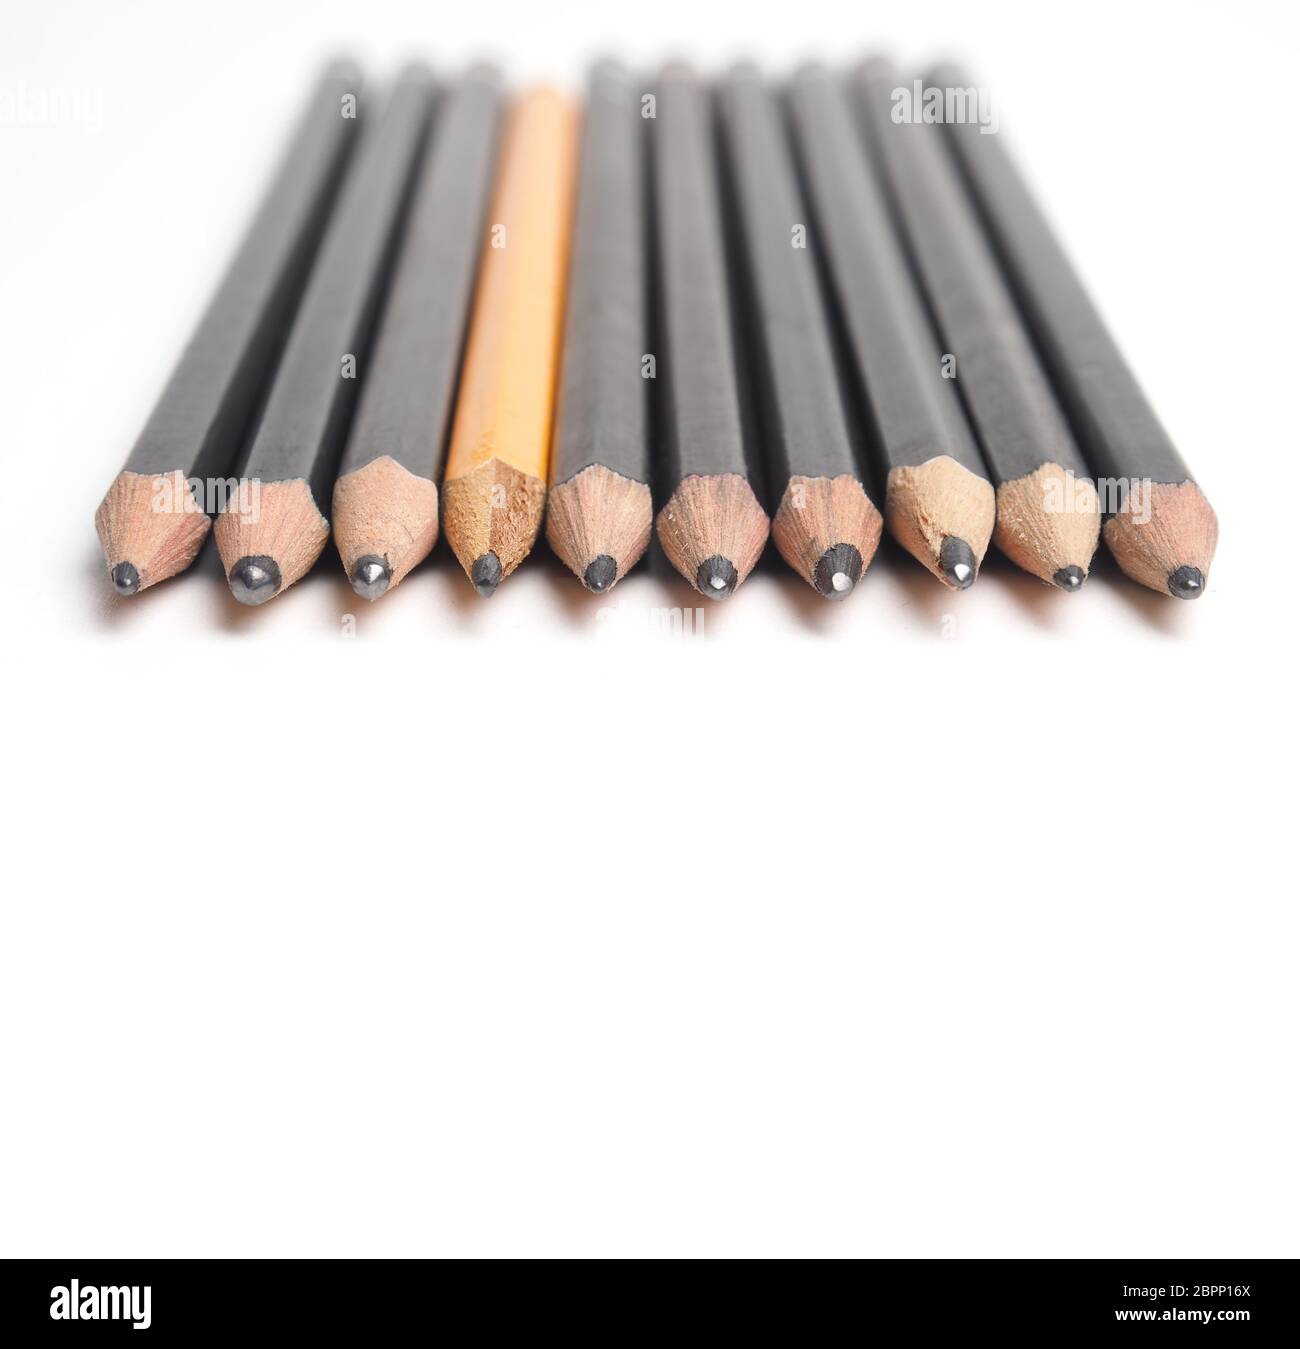 Einstellen des Künstlers Bleistifte in einer Reihe auf einem weißen Tisch mit Platz für Text, selektiver Fokus auf den Vordergrund Stockfoto